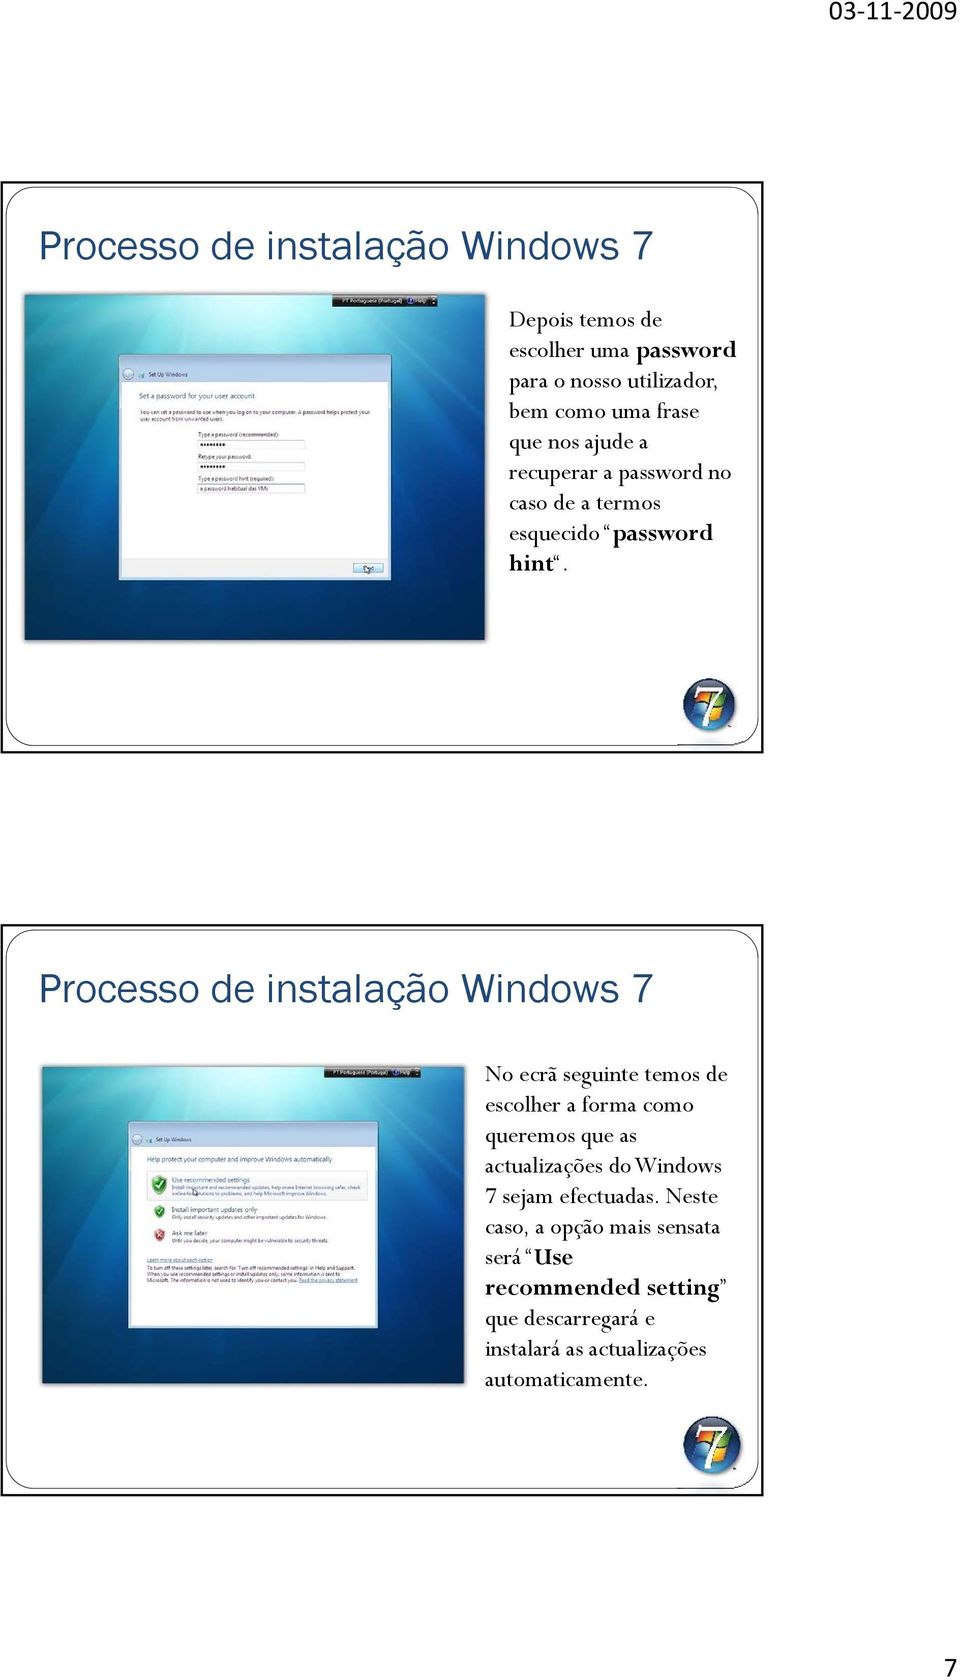 No ecrã seguinte temos de escolher a forma como queremos que as actualizações do Windows 7 sejam